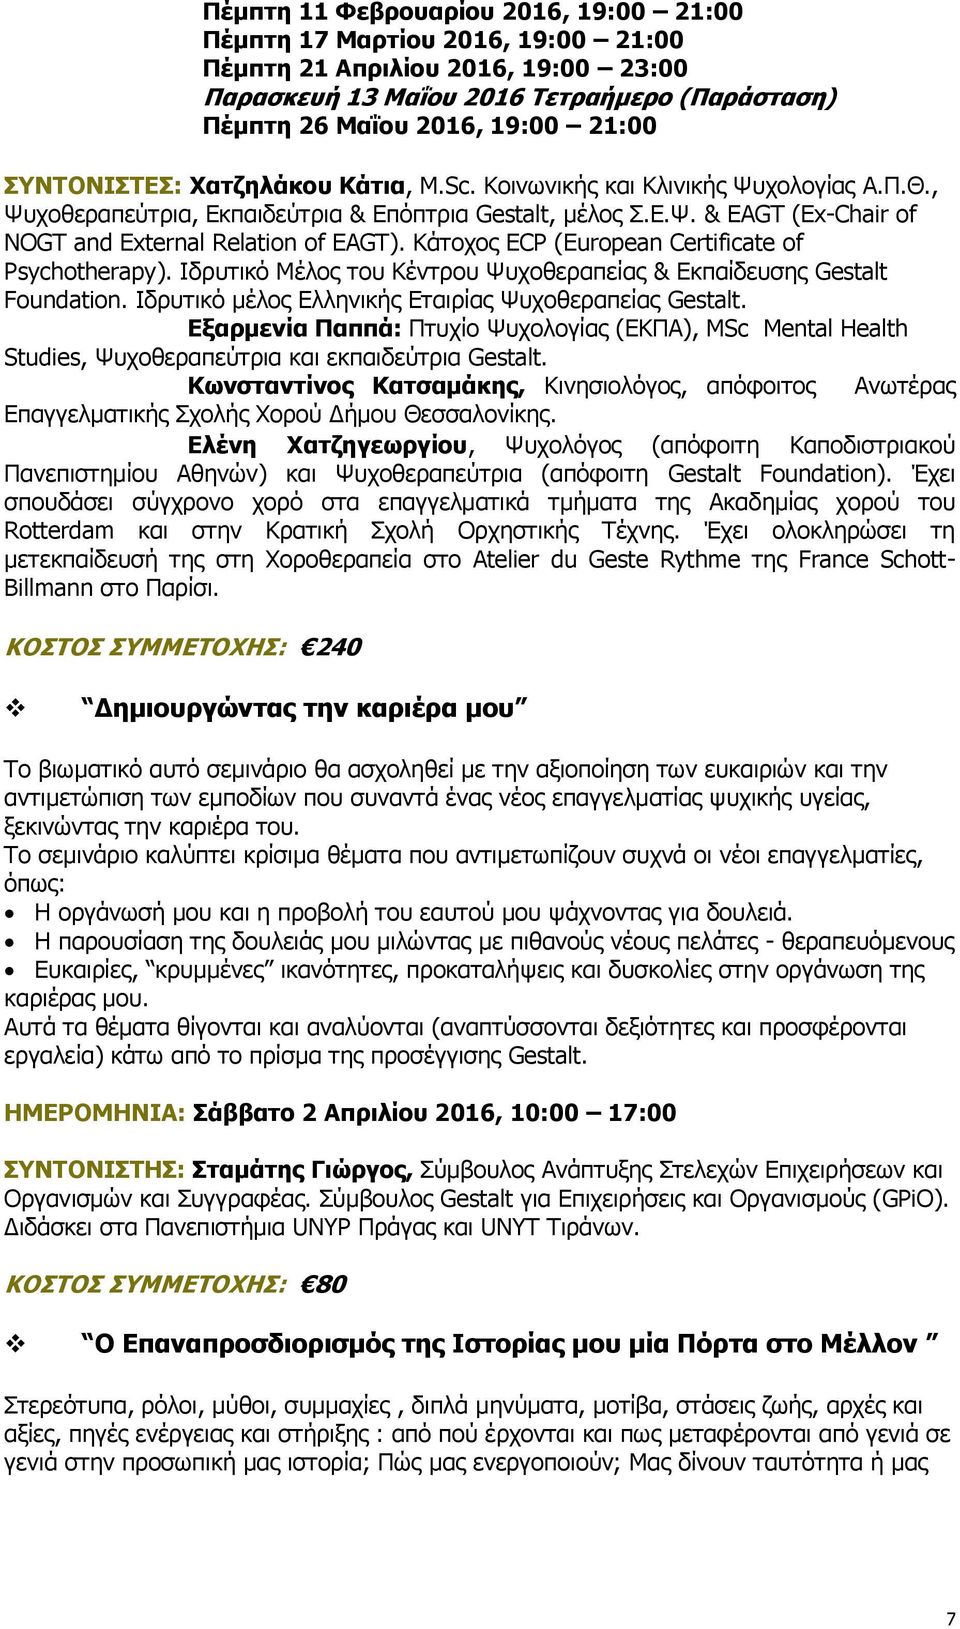 Κάτοχος ECP (European Certificate of Psychotherapy). Ιδρυτικό Μέλος του Κέντρου Ψυχοθεραπείας & Εκπαίδευσης Gestalt Foundation. Ιδρυτικό μέλος Ελληνικής Εταιρίας Ψυχοθεραπείας Gestalt.